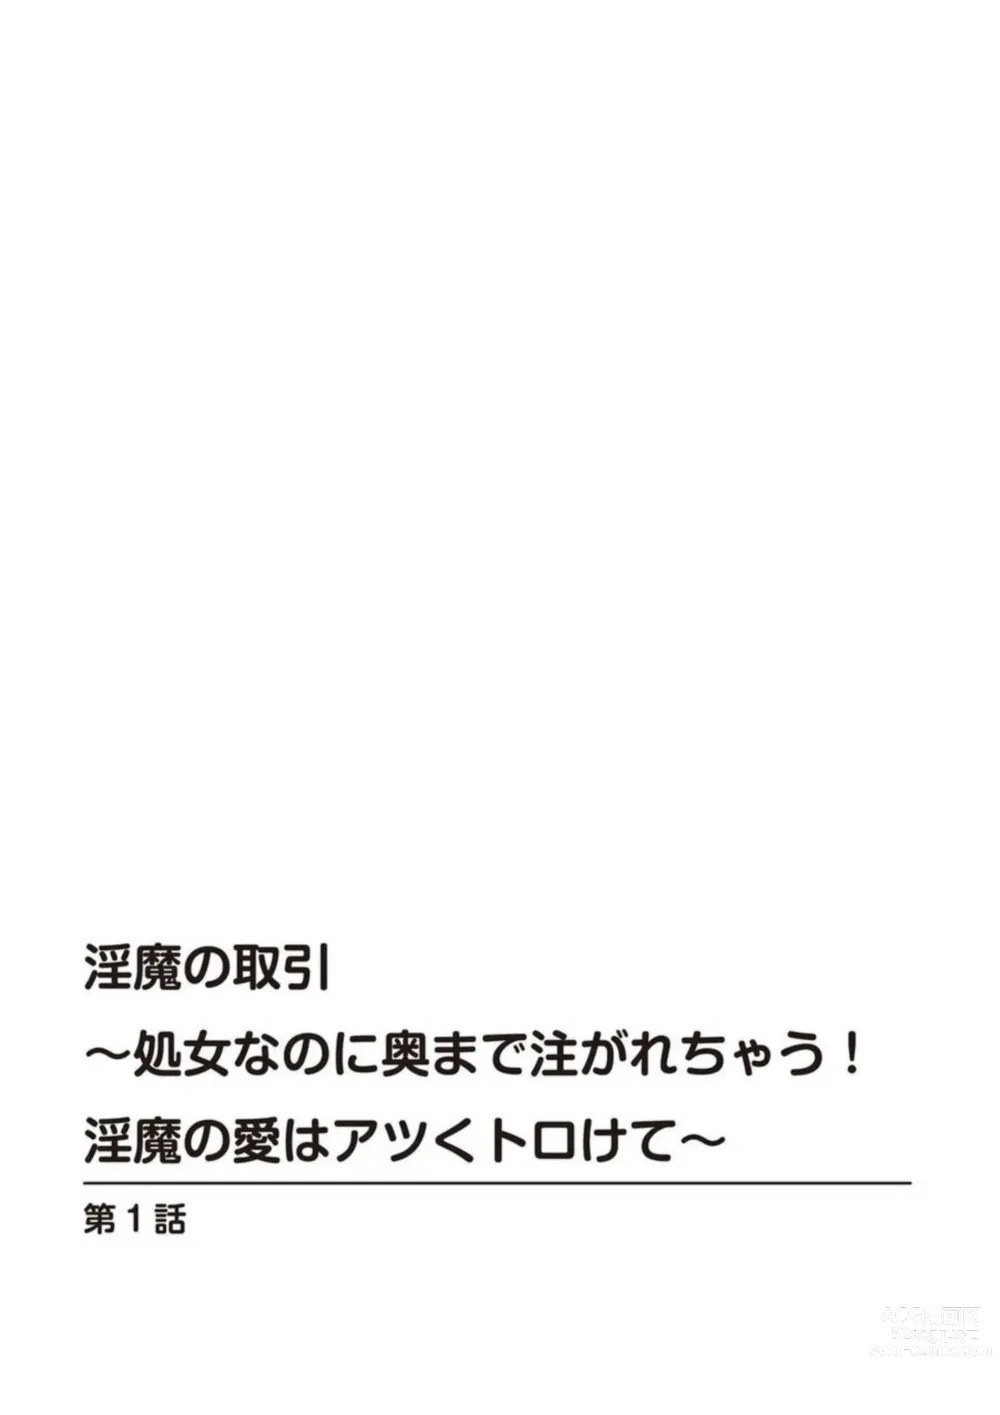 Page 2 of manga Inma no Torihiki ~ Shojonanoni oku made Sosoga re Chau! Inma no ai wa Atsuku Torokete ~ 1-2